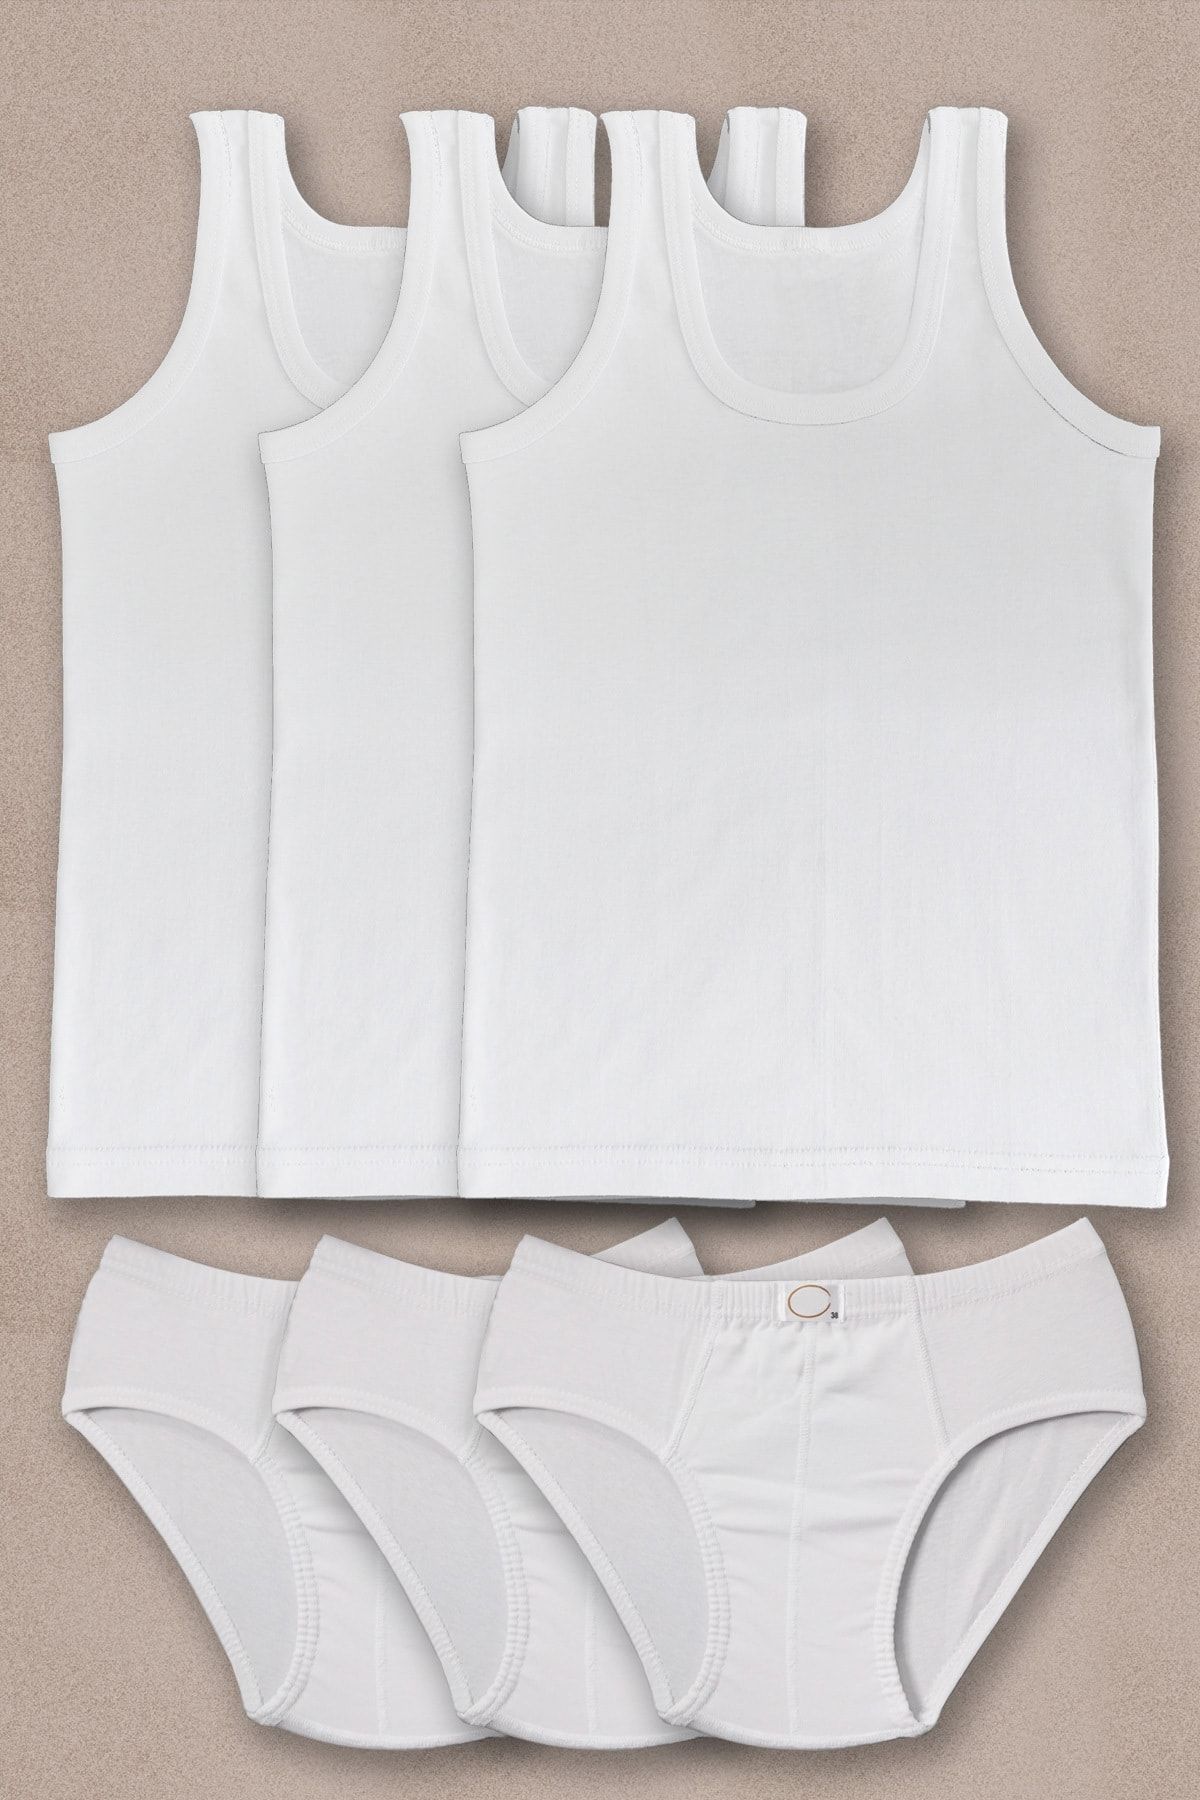 ali altun PRENS çamaşırları Erkek Çocuk Beyaz 3lü Paket Atlet Külot Takım 1250p3